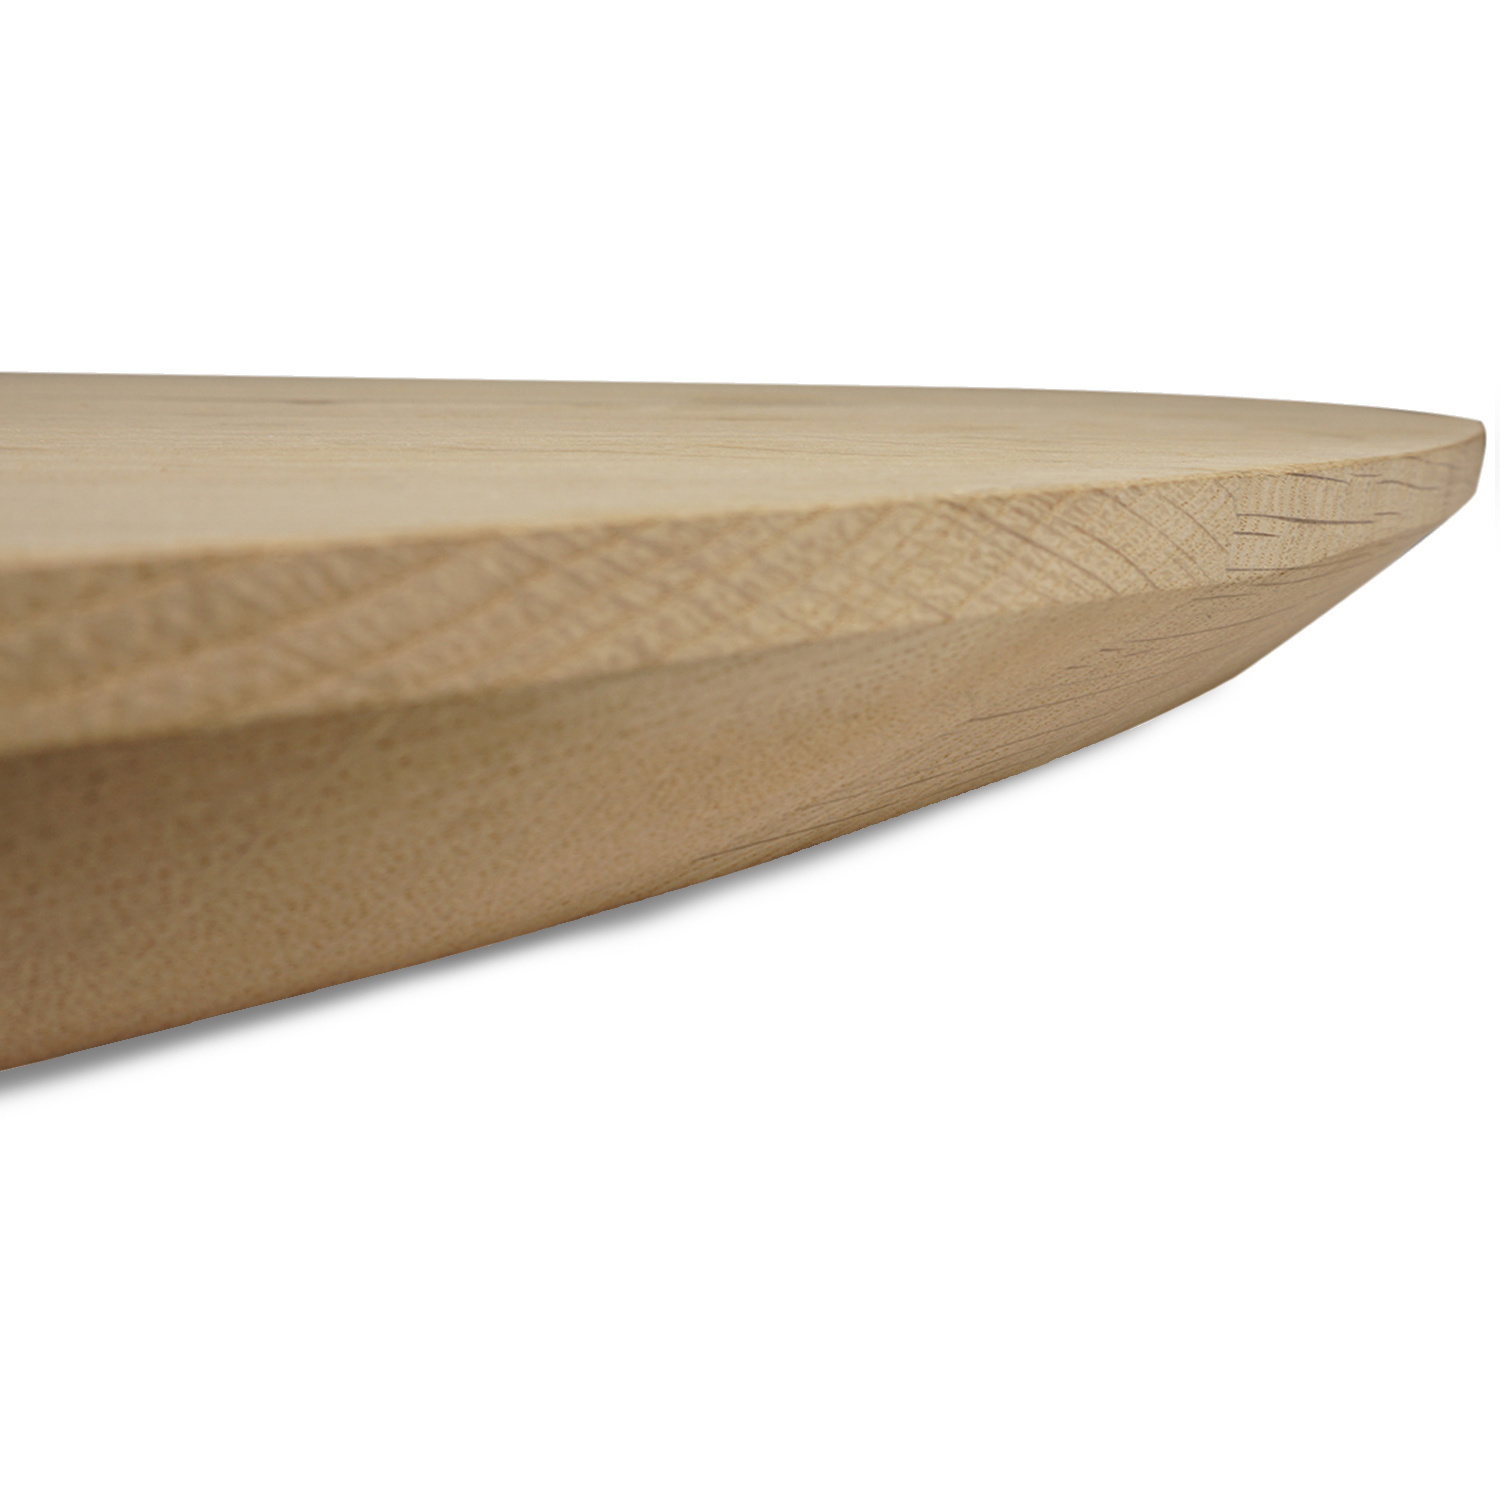  Tischplatte Eiche oval - 2,7 cm dick (1-Schicht) - Breite Lamellen (10 - 12 cm breit) - Eichenholz A-Qualität - Tischplatte ovale / ellipse Eiche - verleimt & künstlich getrocknet (HF 8-12%) - verschiedene Größen